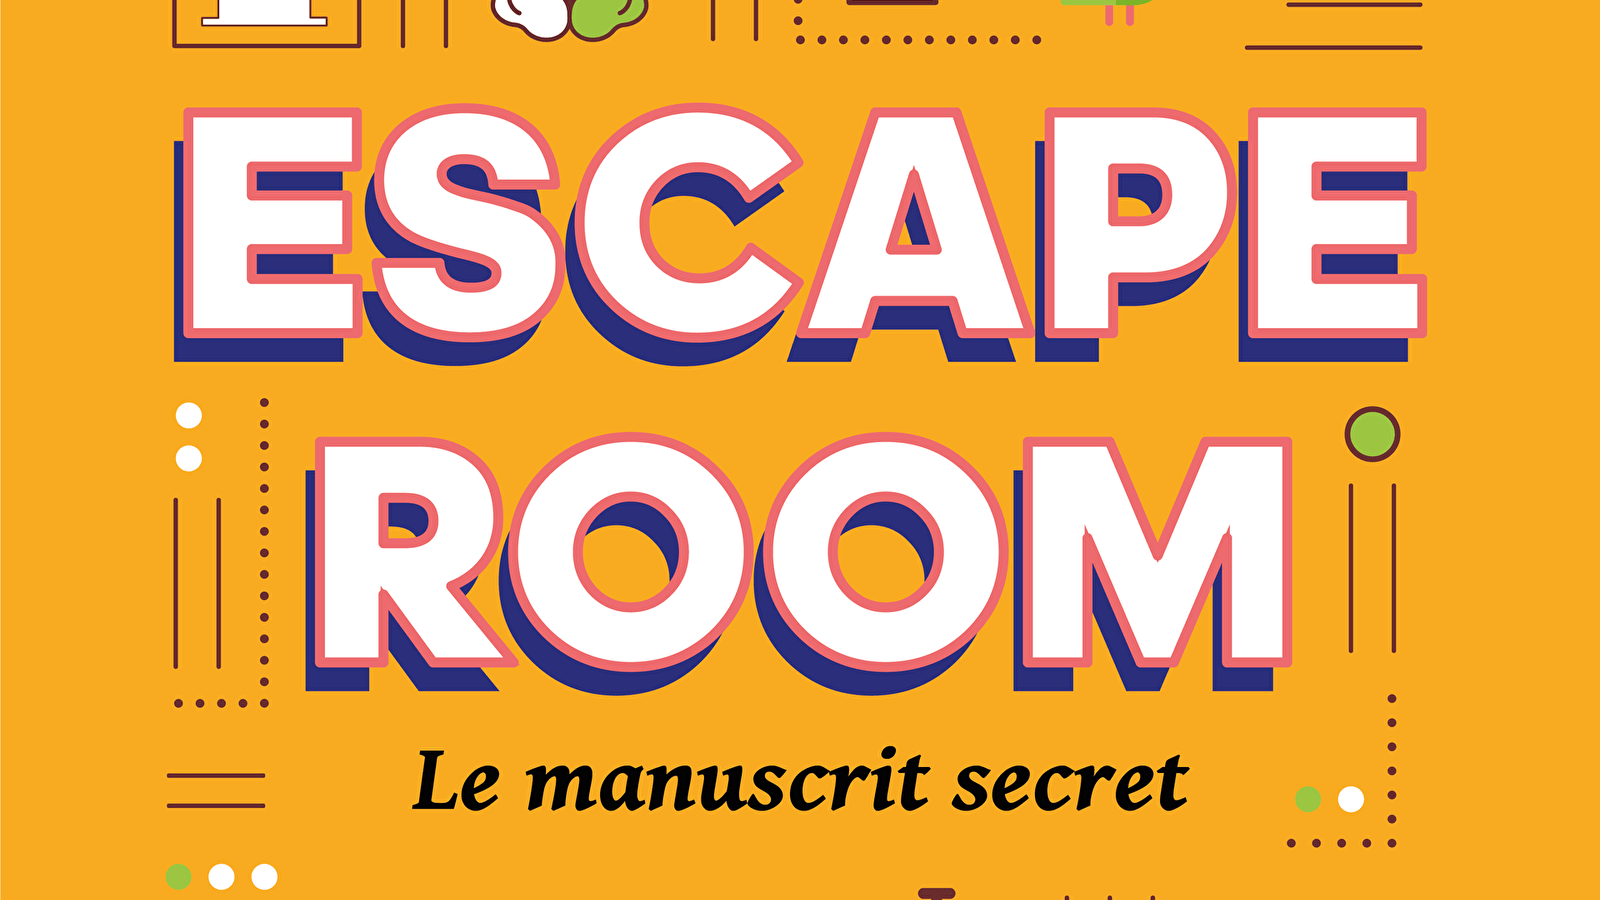 Escape room - The Secret Manuscript